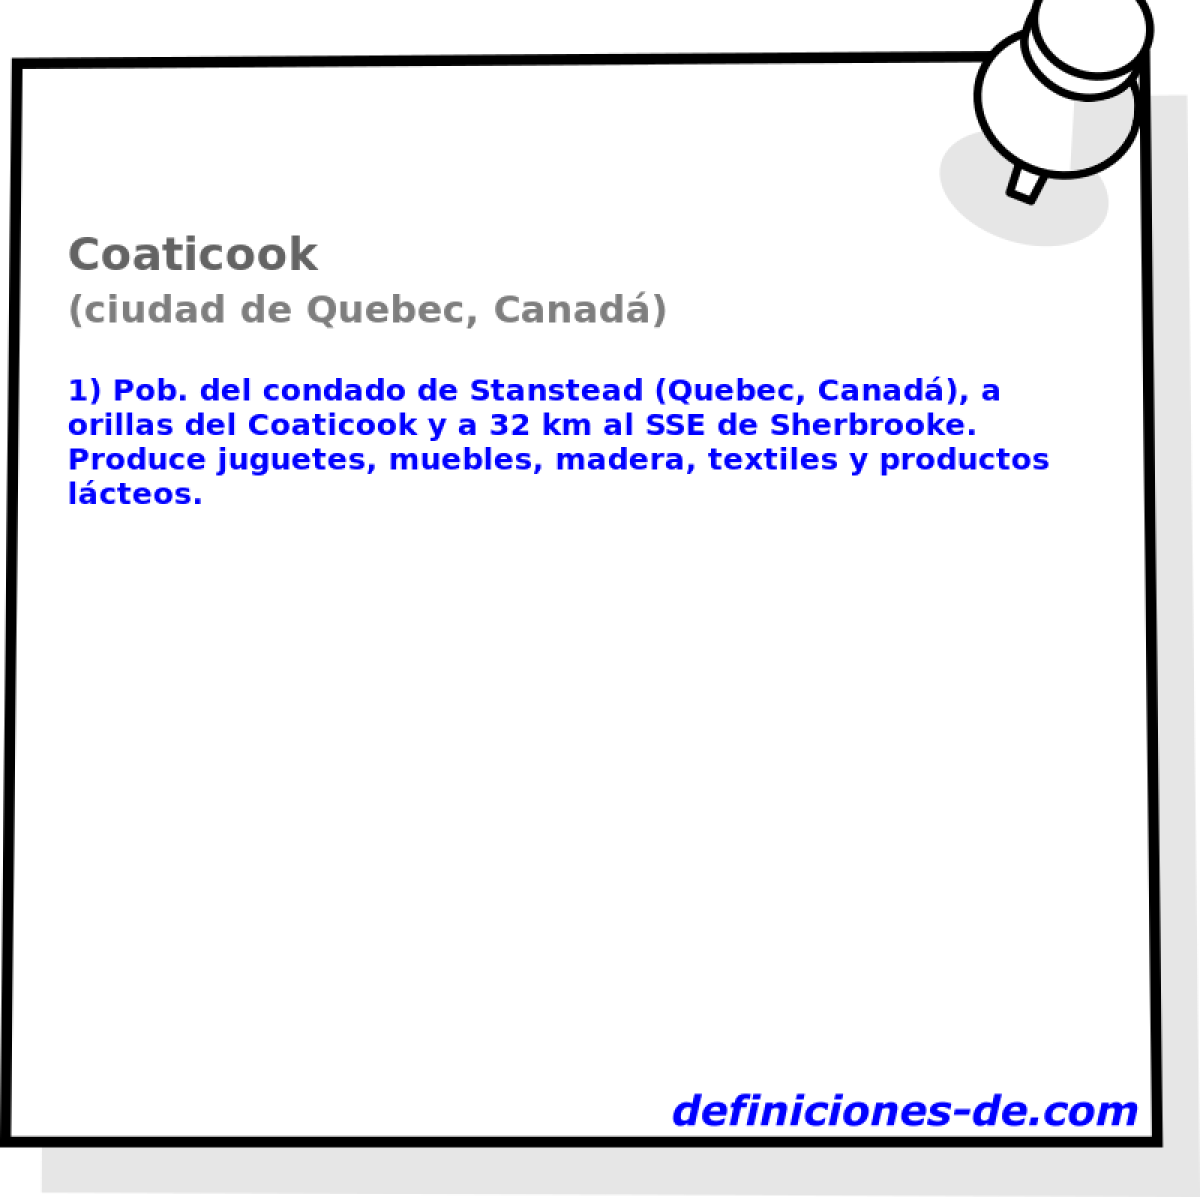 Coaticook (ciudad de Quebec, Canad)